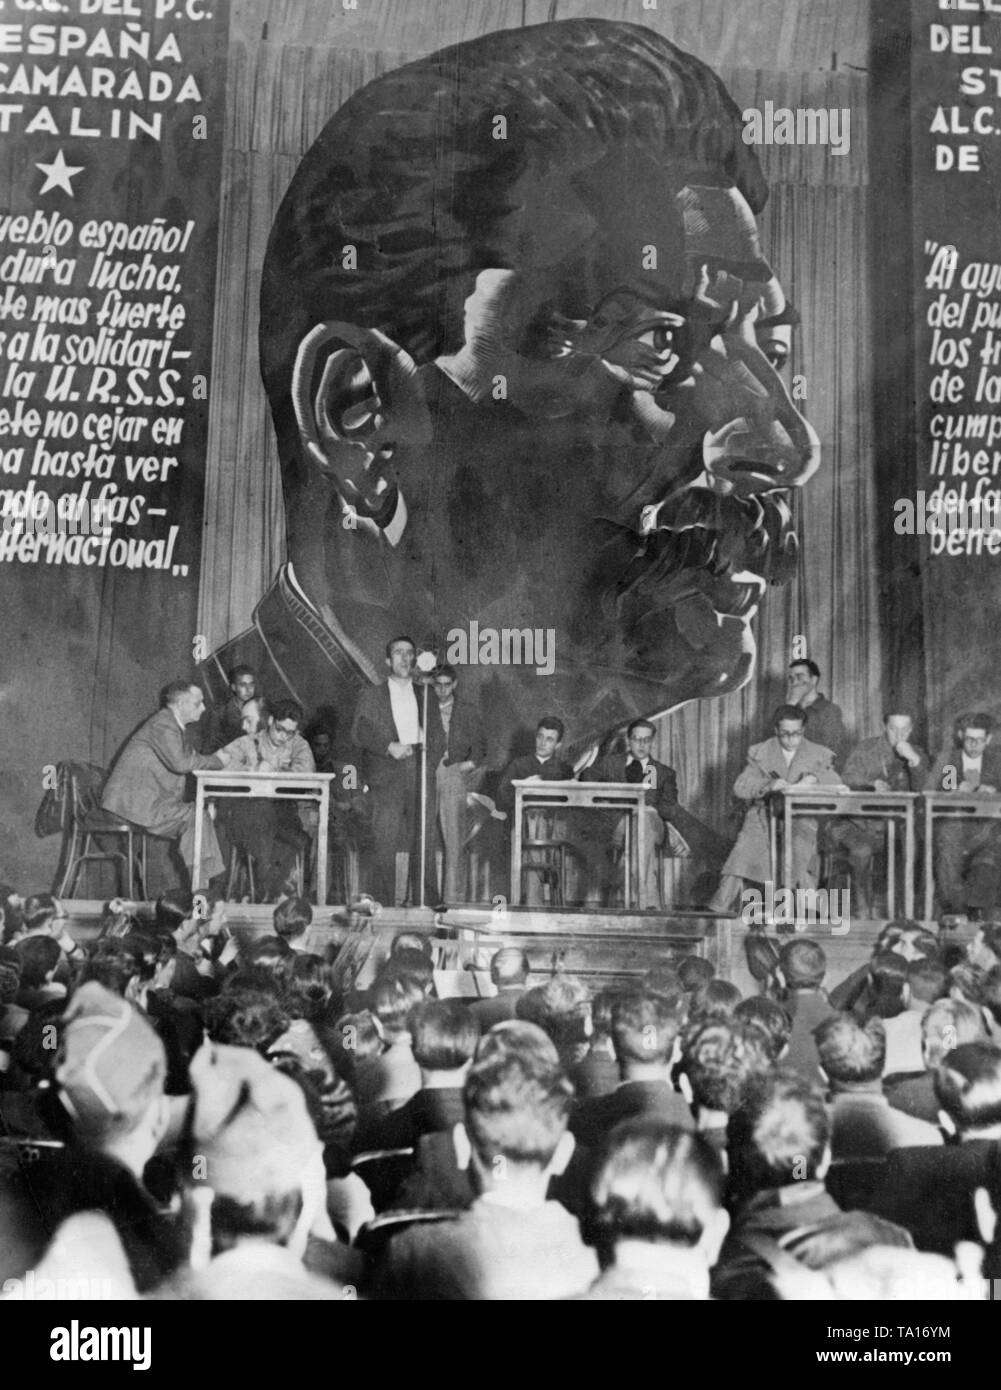 Lors d'un événement de la Parti Communiste Espagnol (Partido Comunista de España) à Madrid pendant le siège de la ville. Portrait de Staline était censé exprimer le besoin des troupes de la république d'un appui de l'Union soviétique. En plus des citations de Staline, portrait traduit en espagnol aussi exprimer la solidarité de l'Union soviétique pour l'Espagne. Banque D'Images